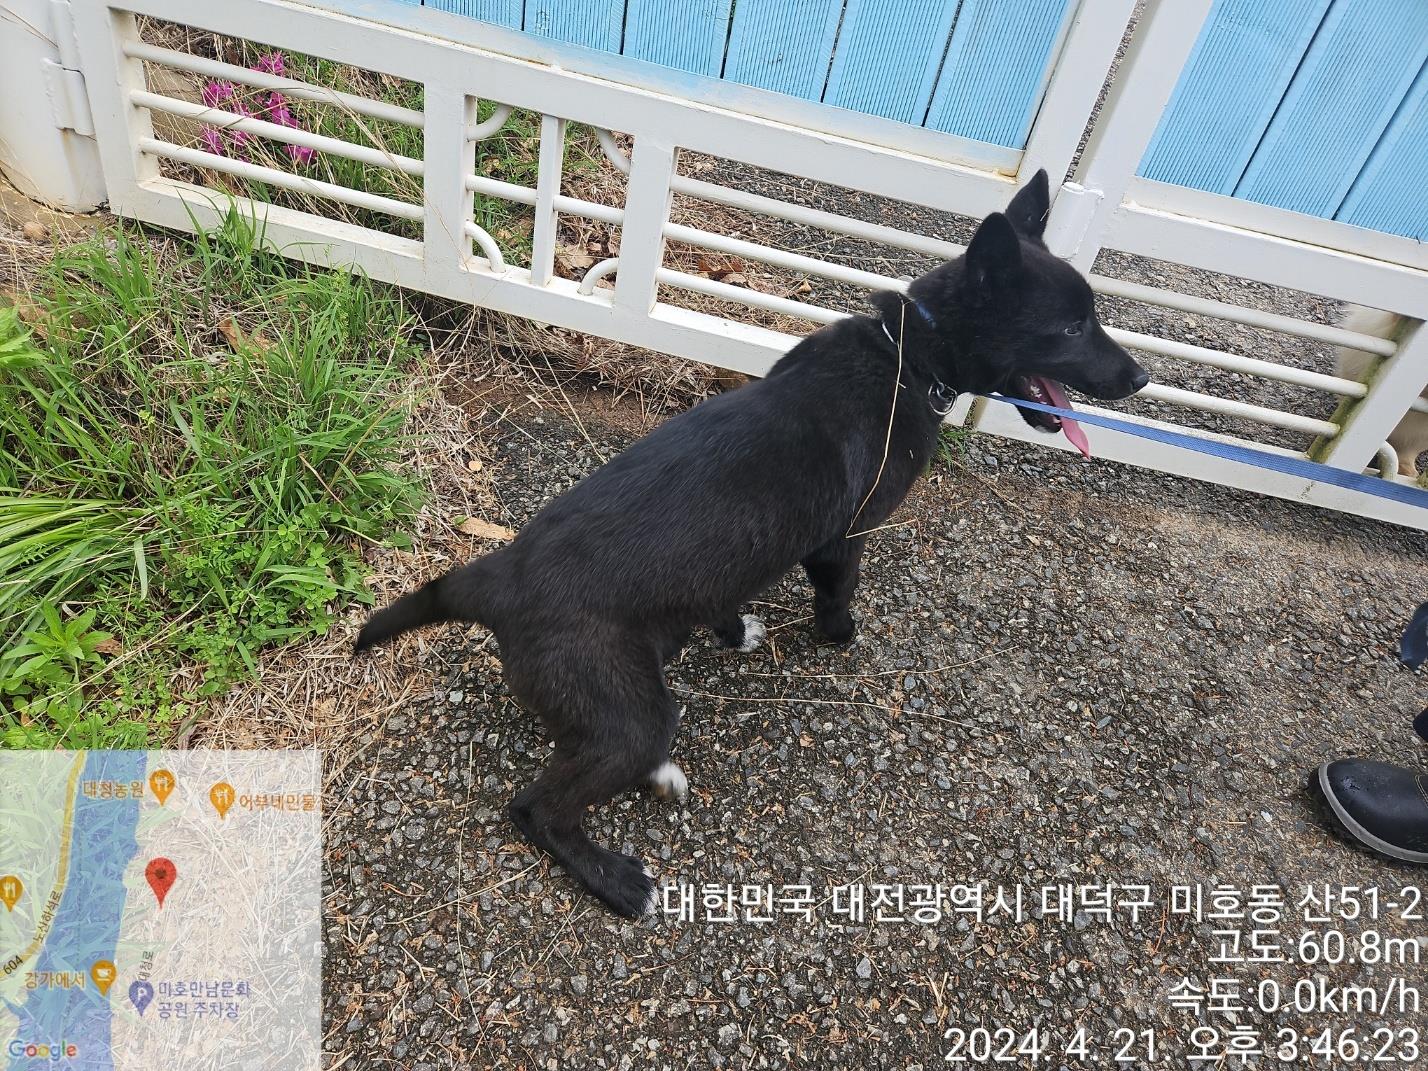 공고 번호가 대전-대덕-2024-00079인 믹스견 동물 사진